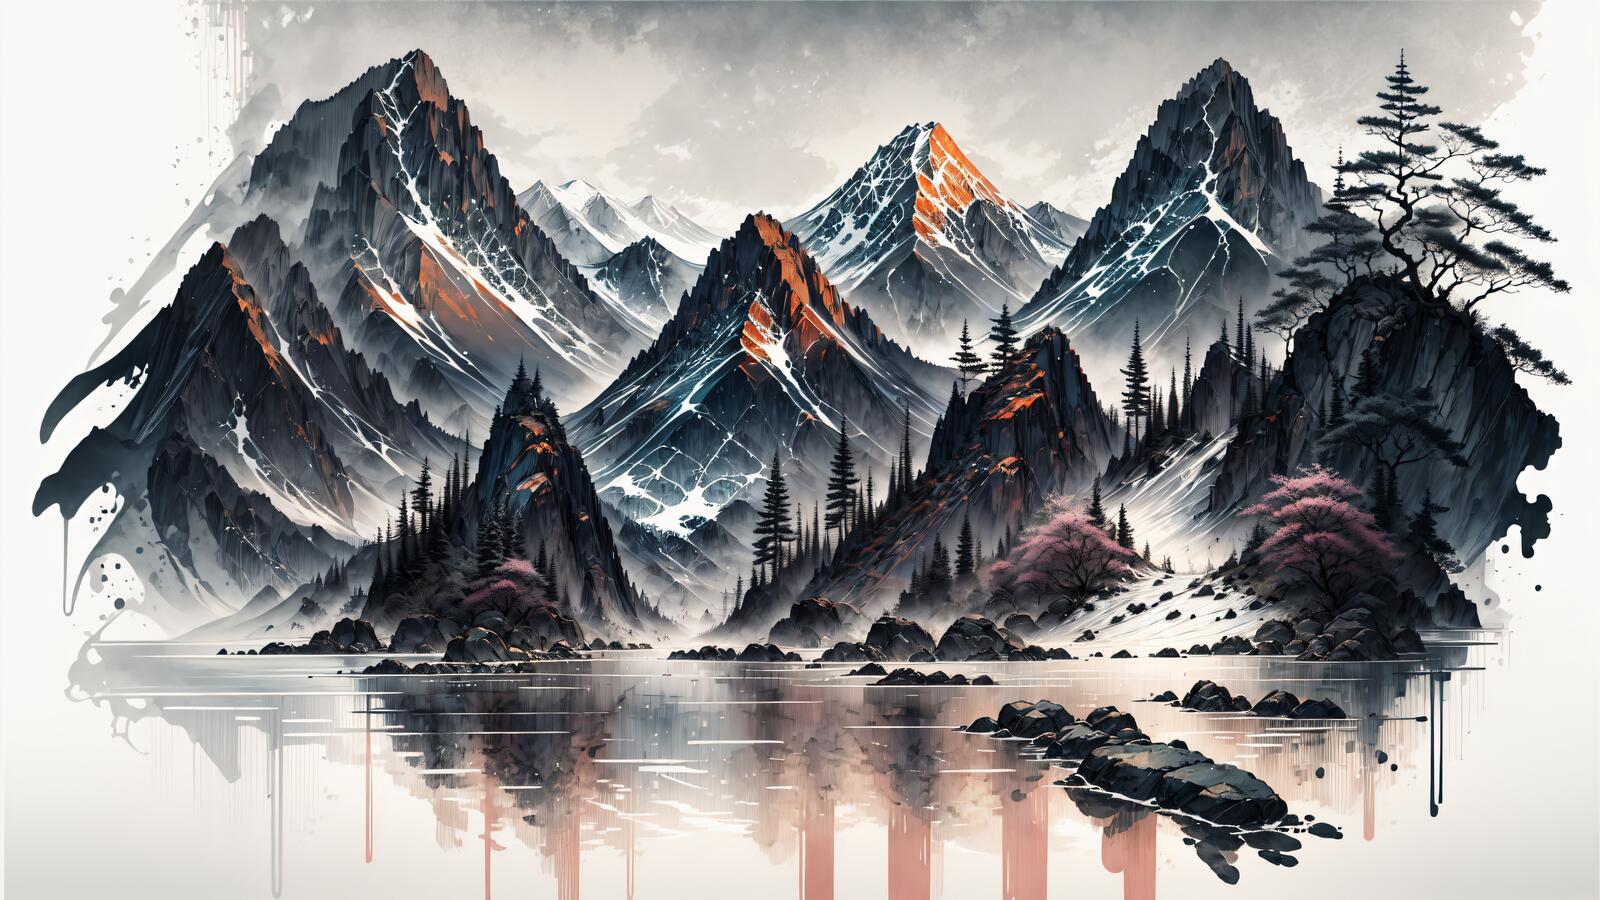 Бесплатное фото Фантастический красивый пейзаж с изображением гор